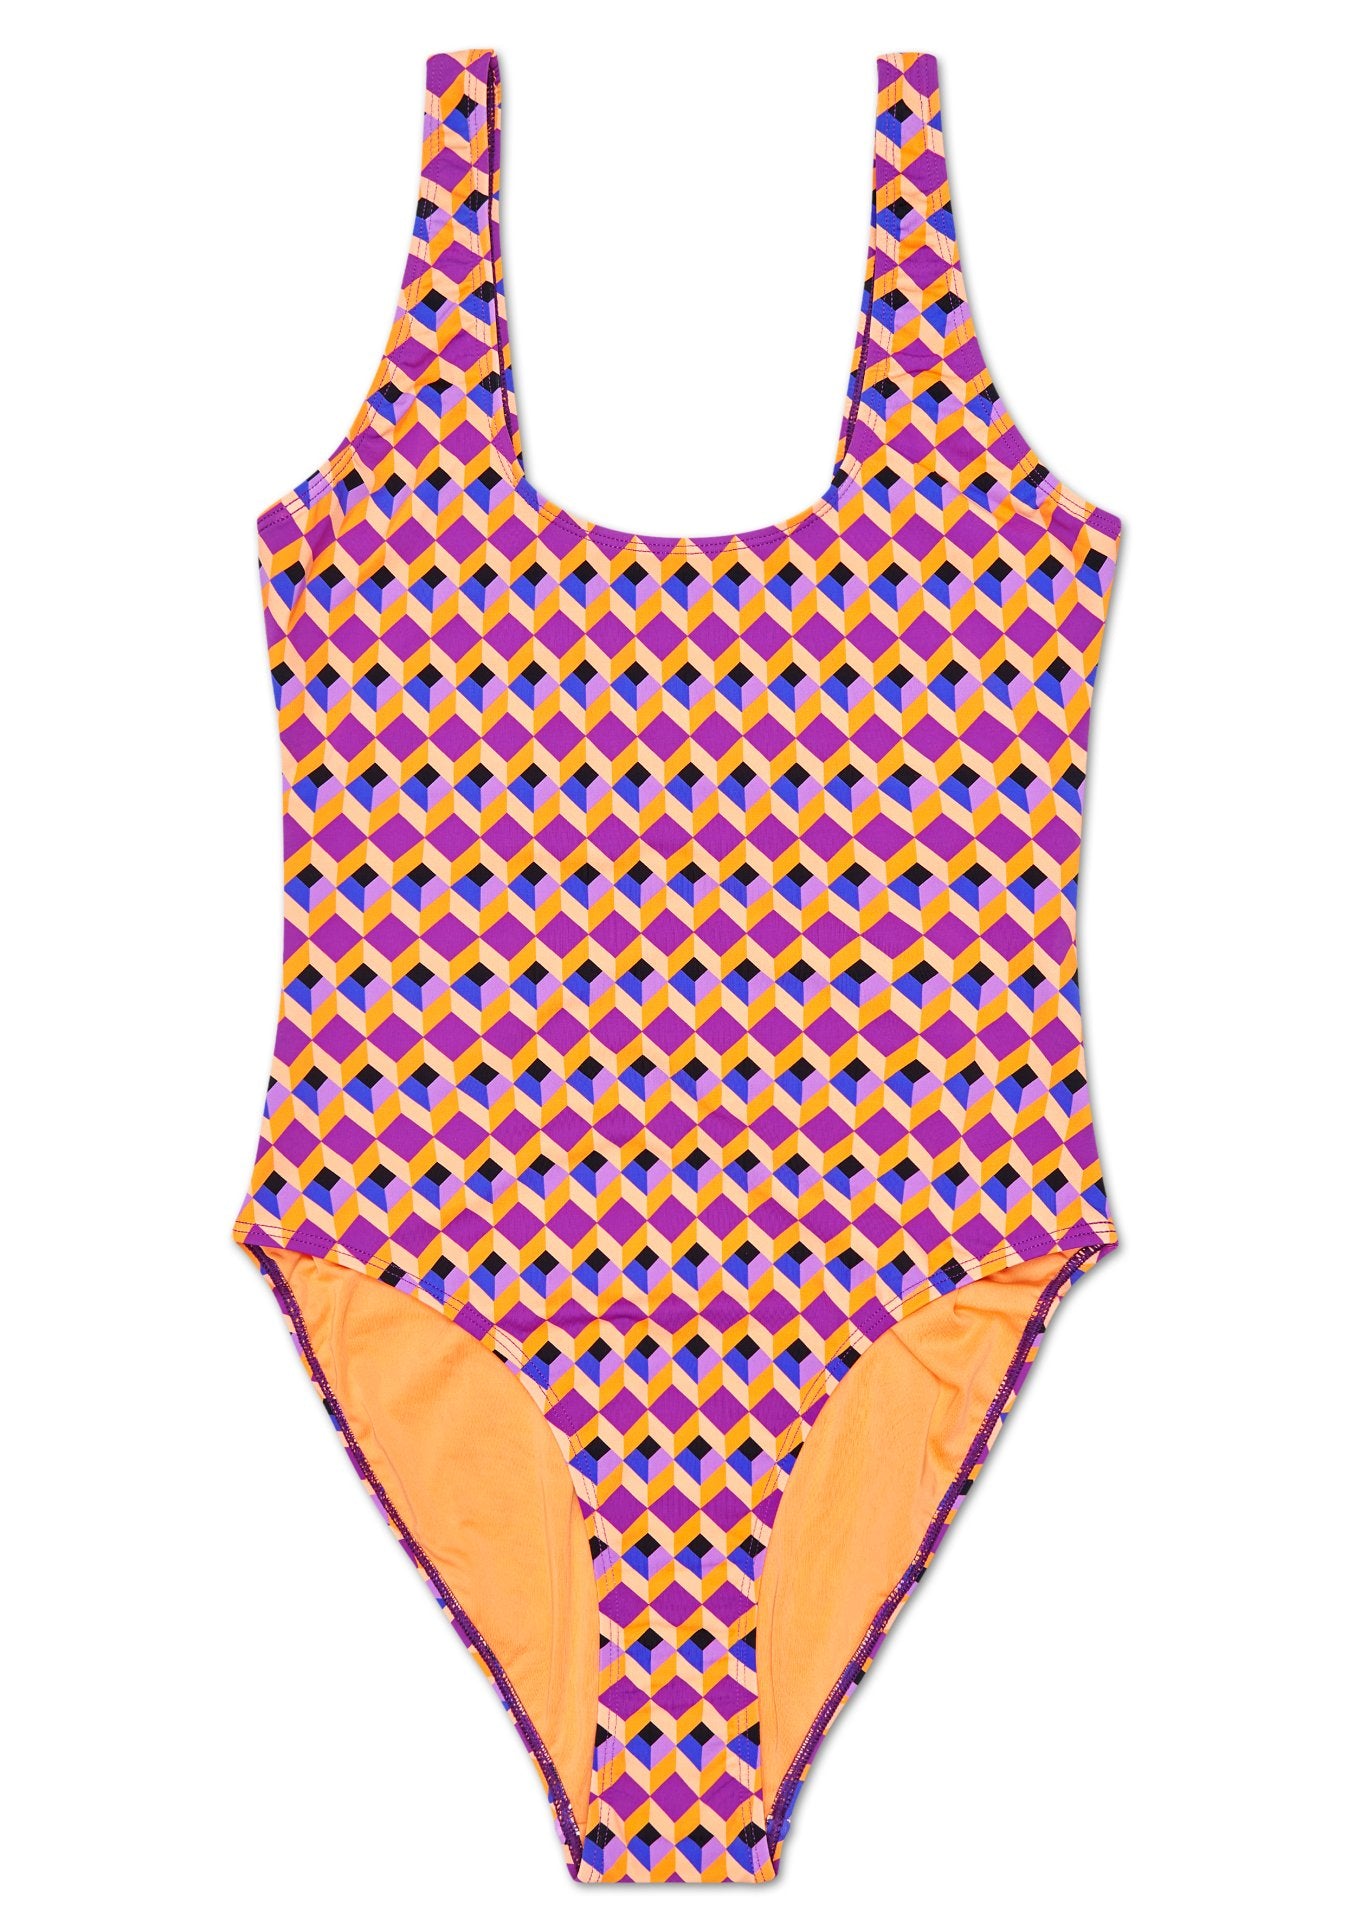 Ružovo-fialové dámske plavky Happy Socks, vzor Optic Square